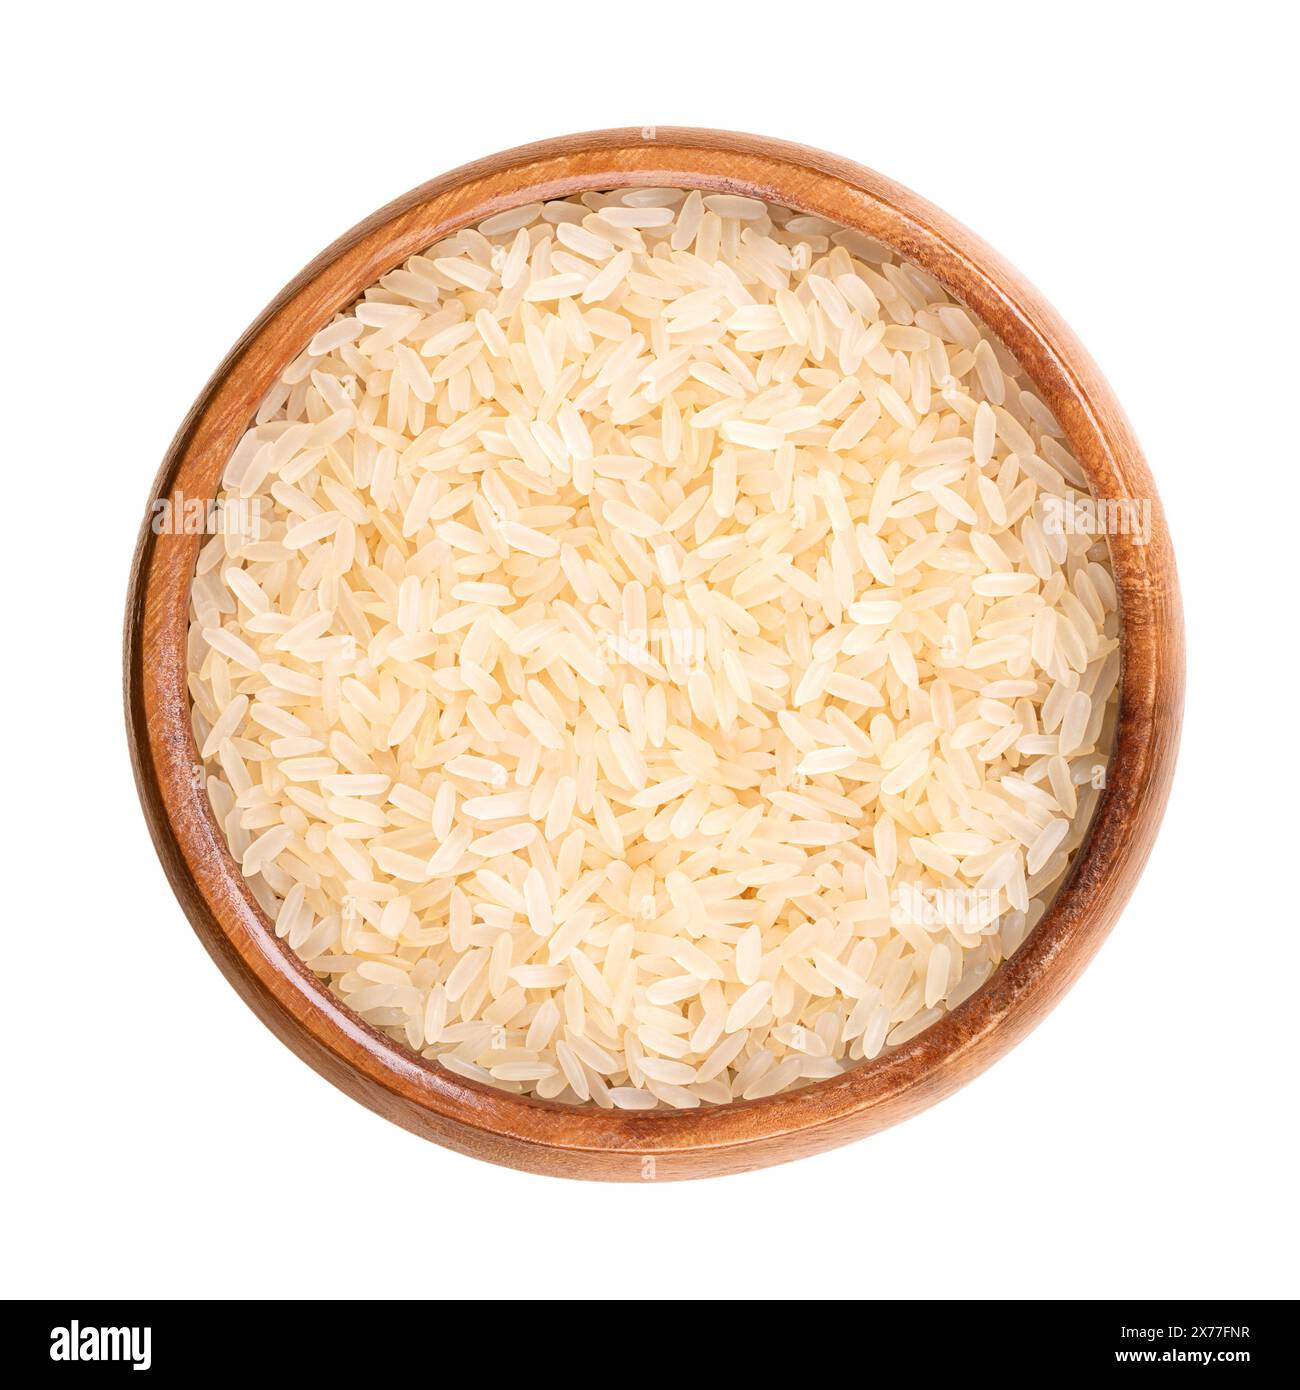 Riso a grani lunghi parboiled, in un recipiente di legno. Chiamato anche riso convertito, Easy-Cook o sella, o miniket. Parzialmente bollito nella buccia. Foto Stock